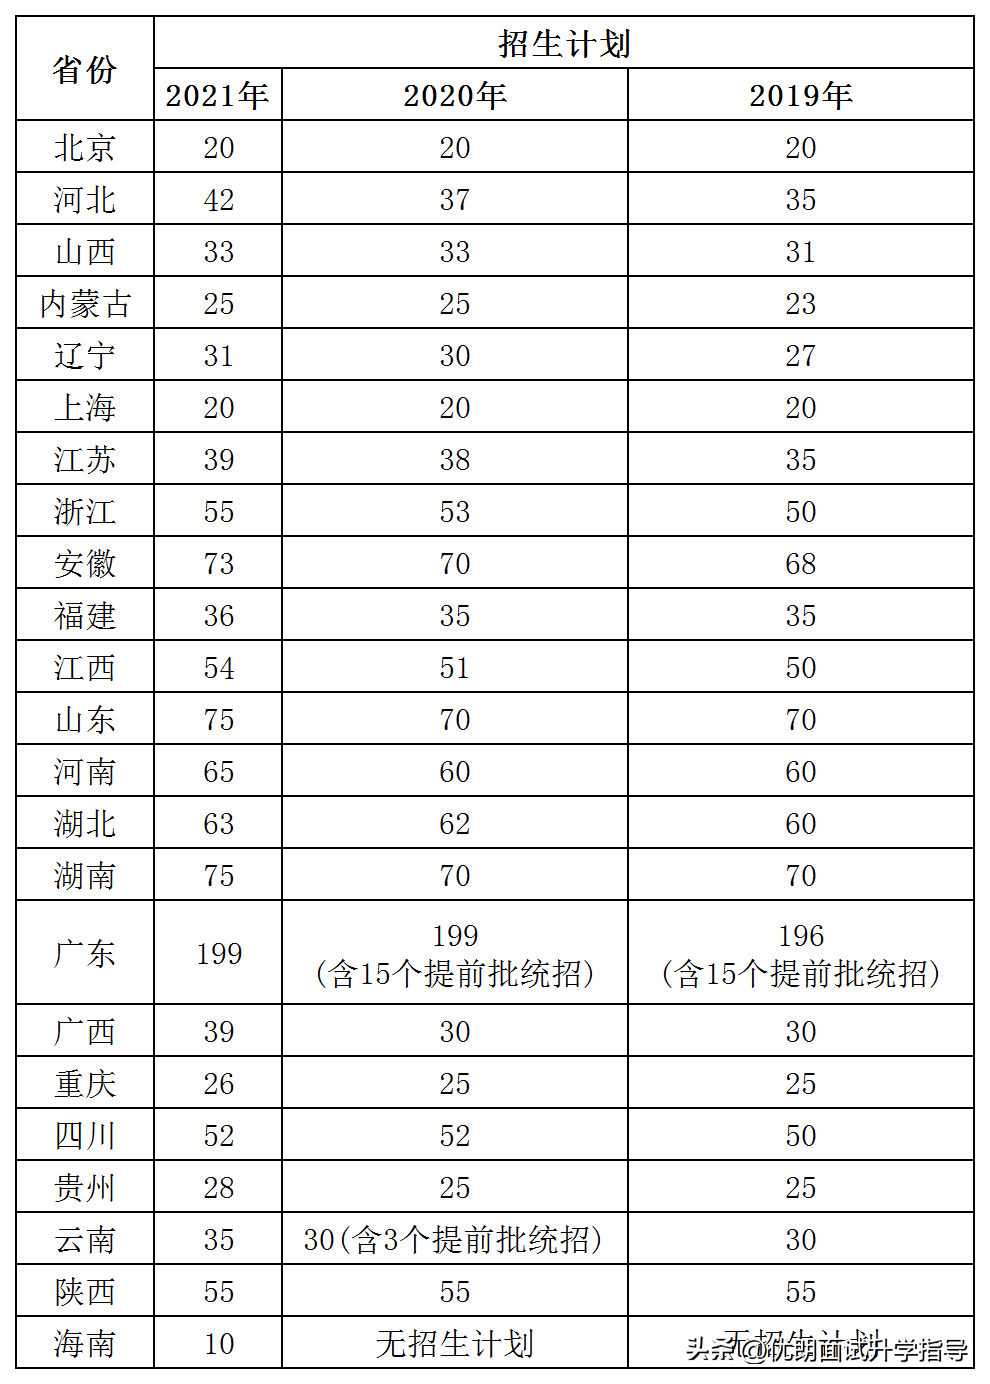 江苏南方科技学院（最新数据对比）